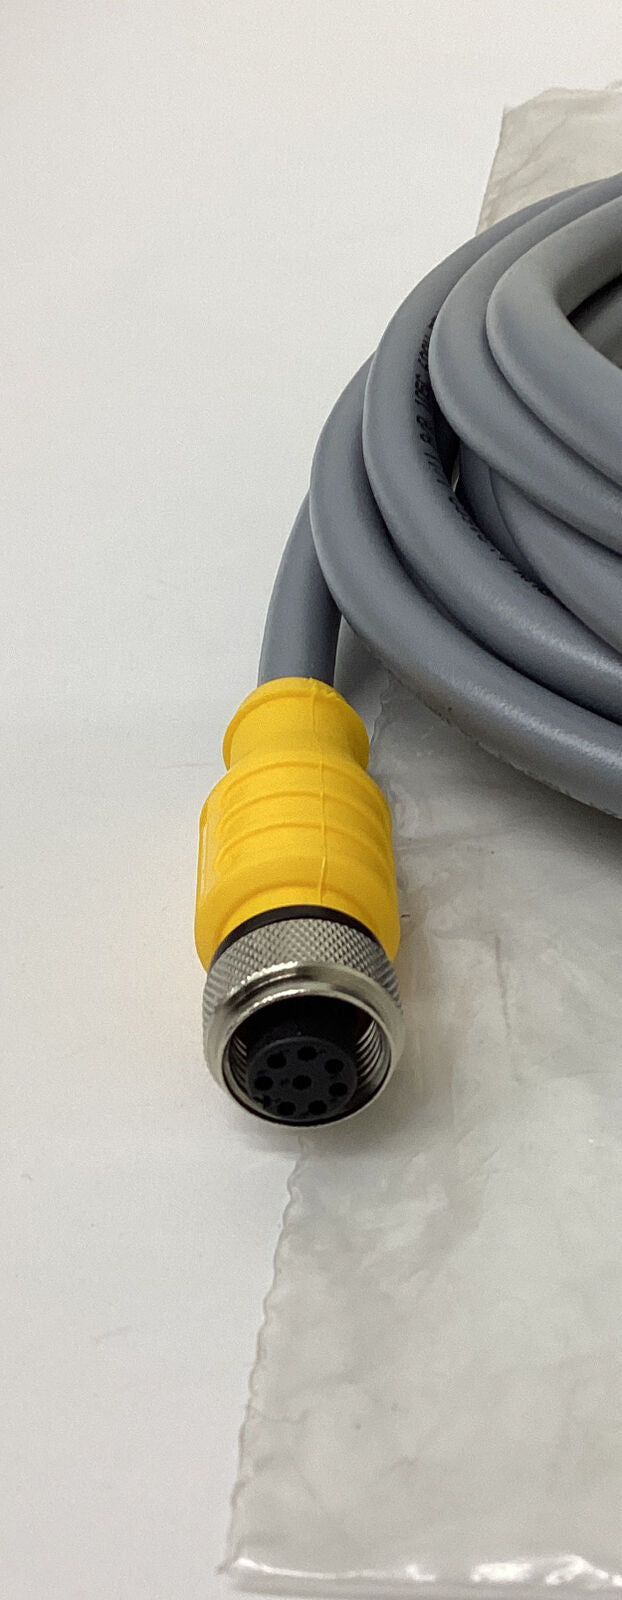 Turck RKS-8T-5 / U0329-45 Eurofast 8-Pin M12 Cable Cord Set (CL112) - 0